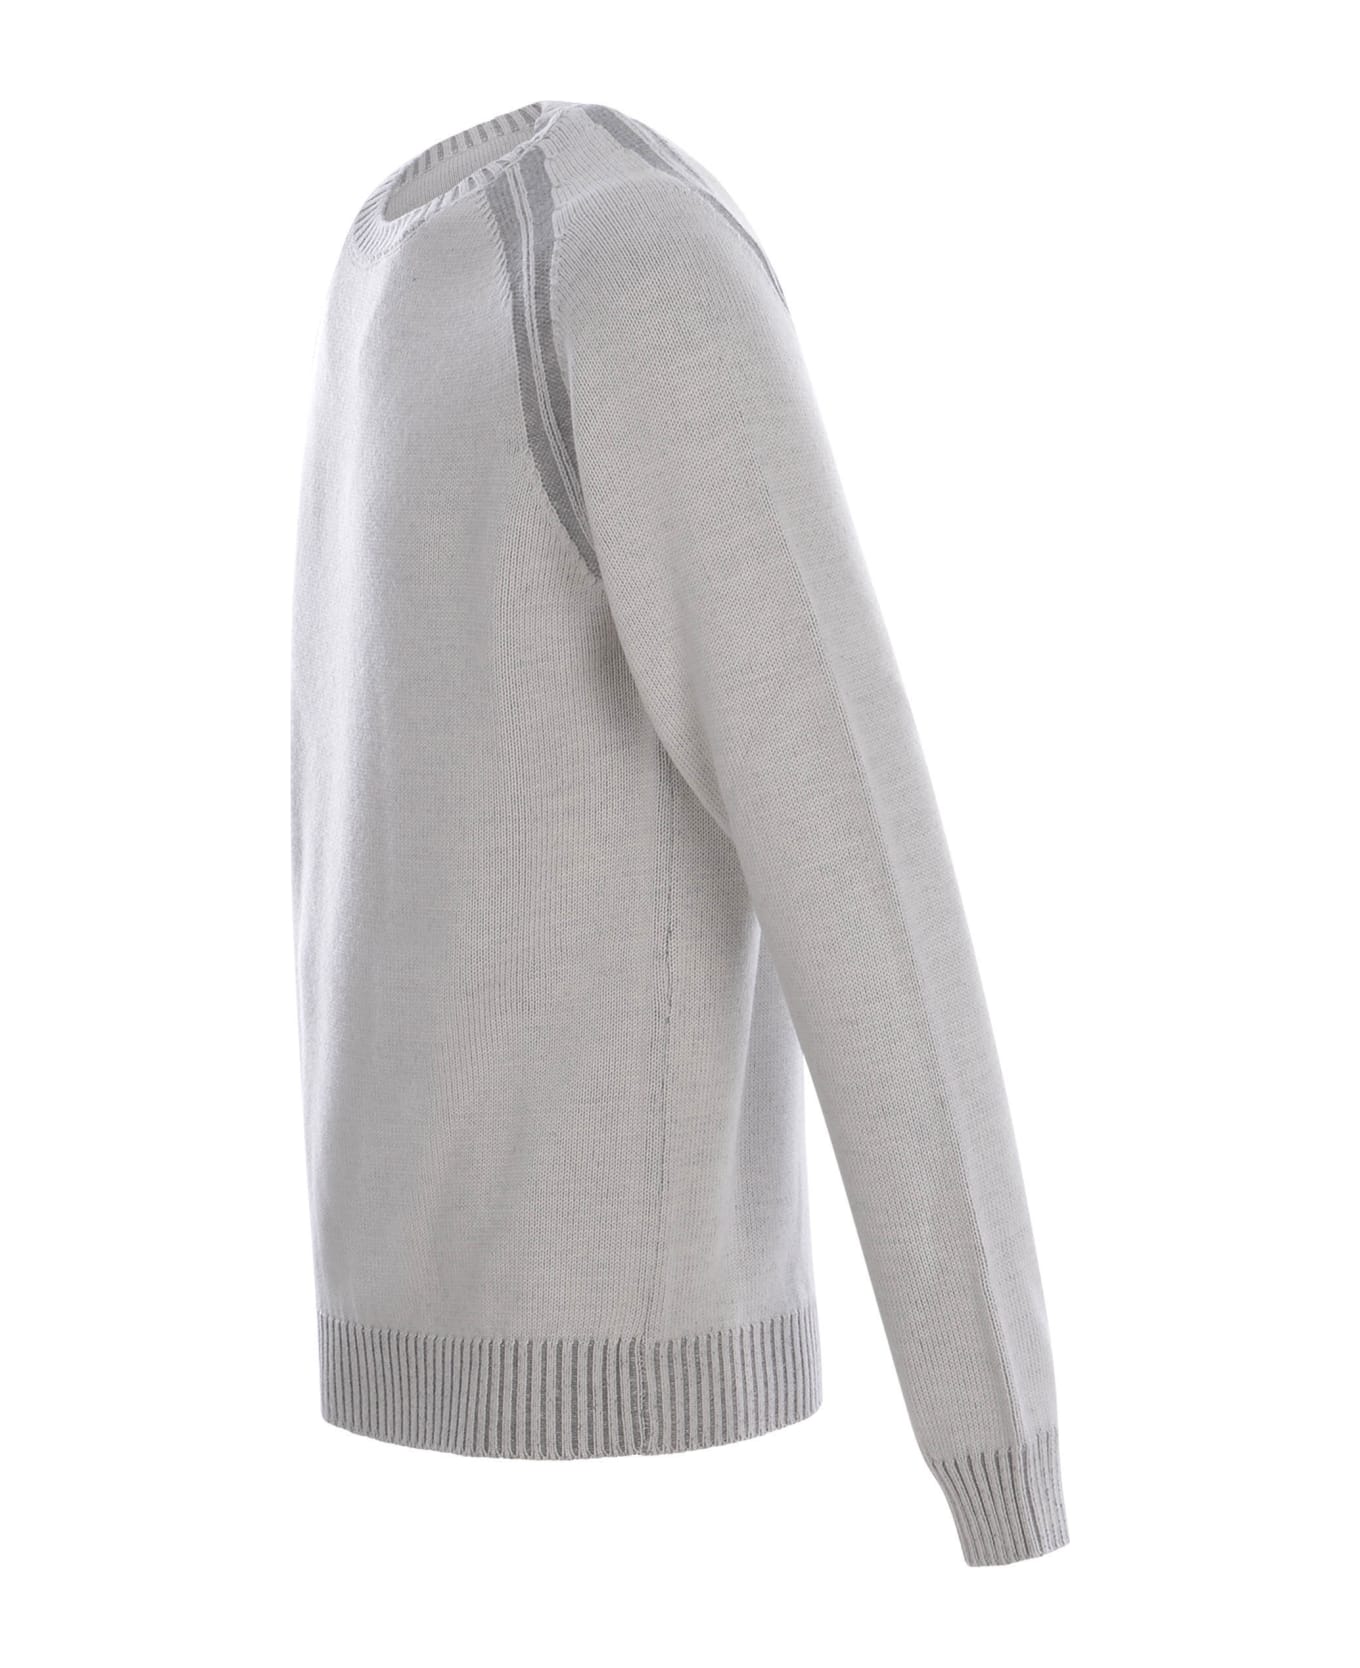 Jeordie's Sweater Jeordie's In Merino Wool - Grigio